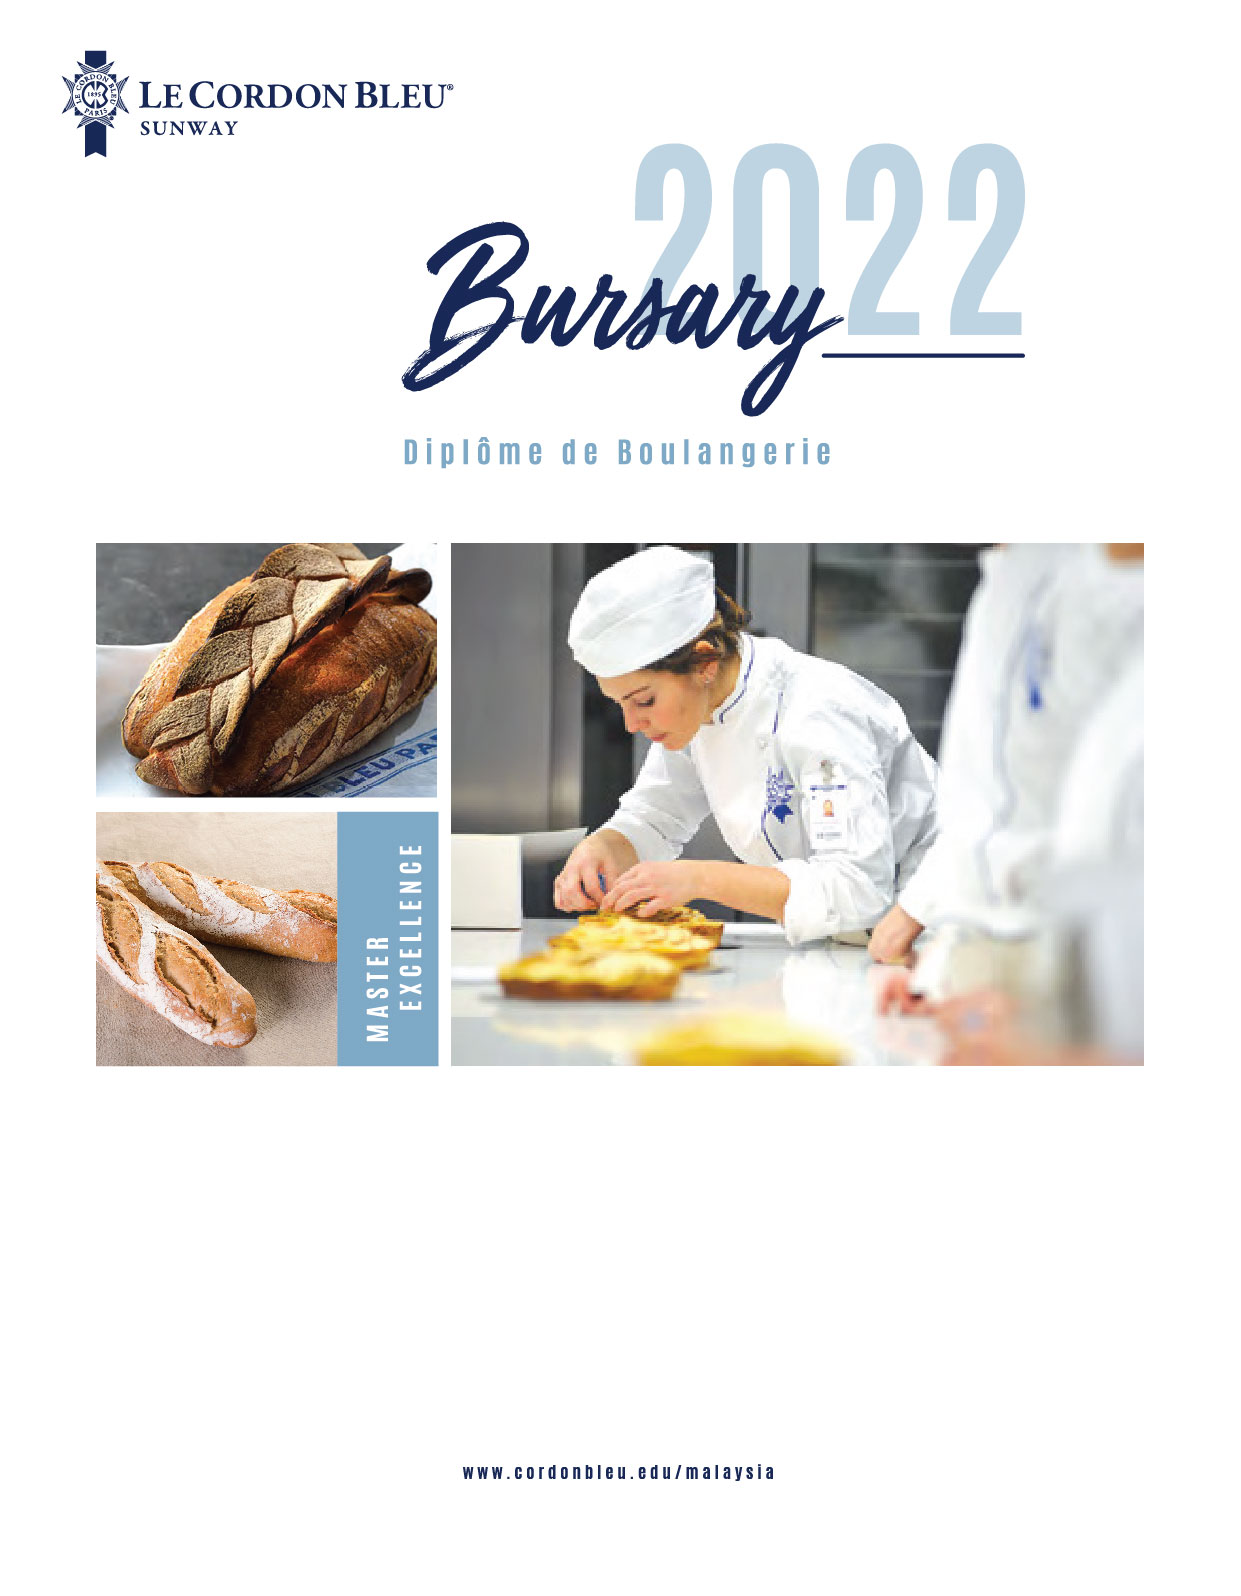 Le Cordon Bleu - Bursary 2022 (Boulangerie)